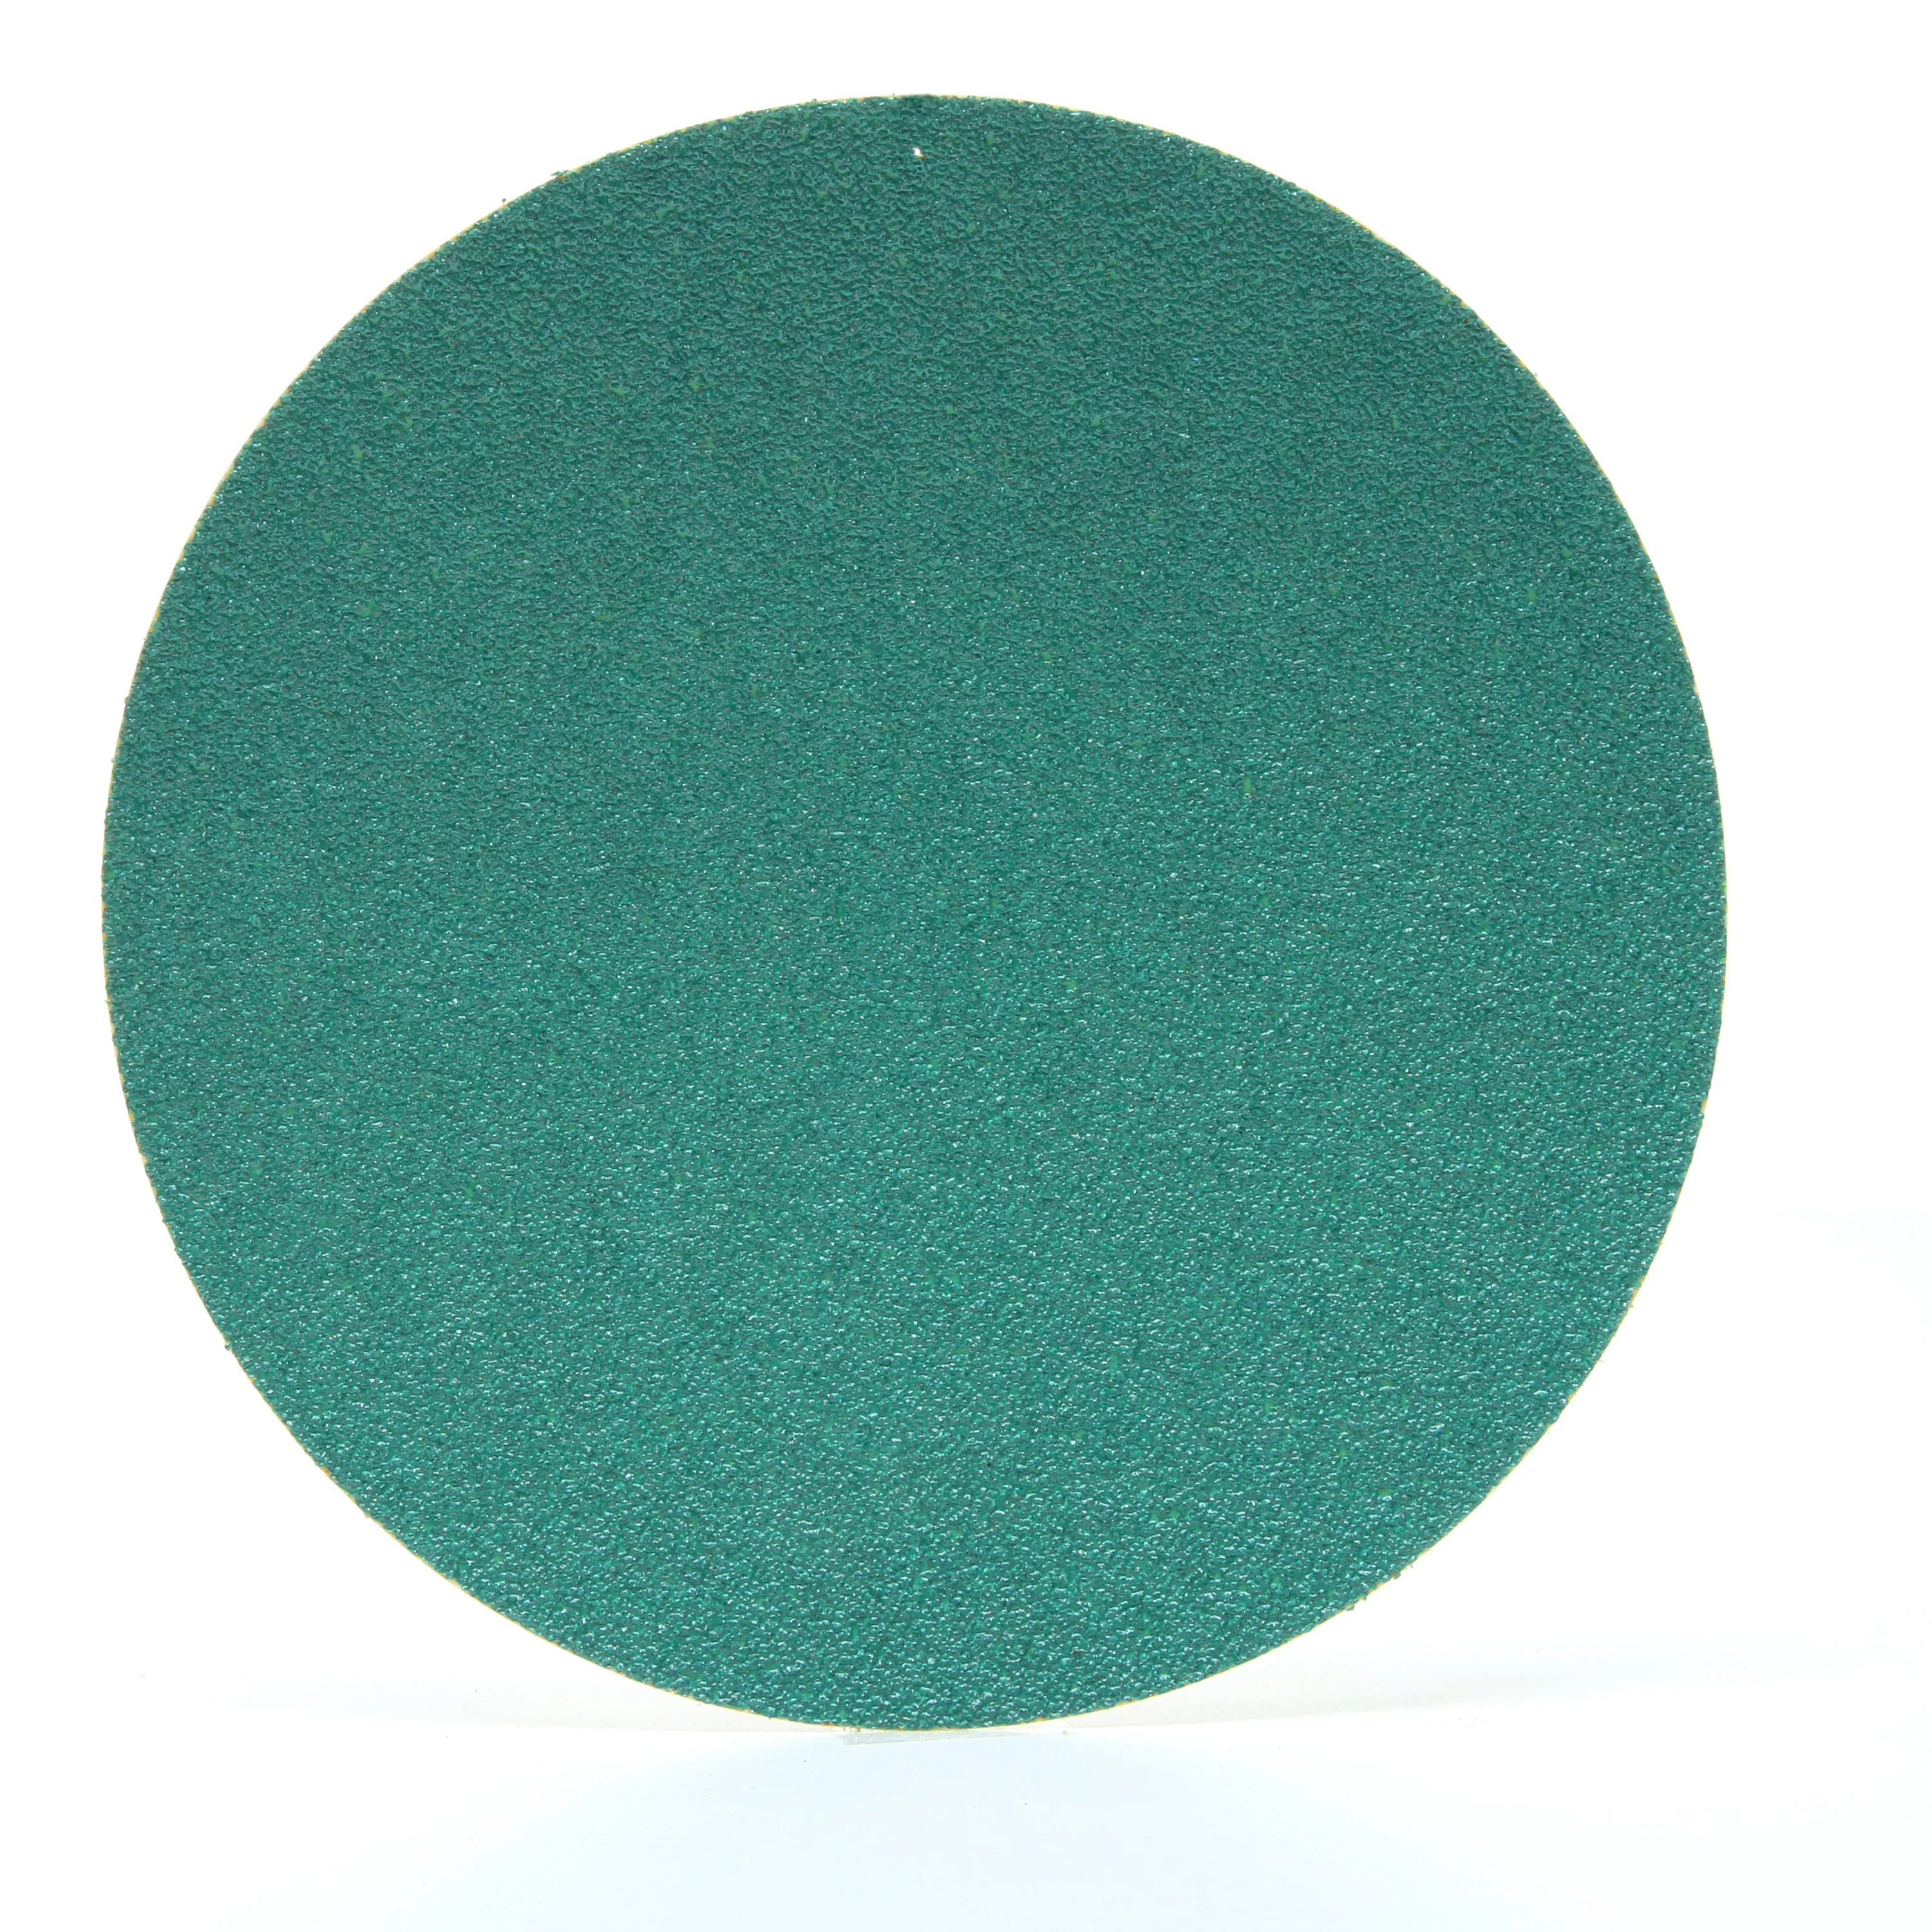 3M™ Hookit™ Green Corps™ Paper Abrasive Disc 750U, 35330, 6 in, 60
grade, 500 discs per case